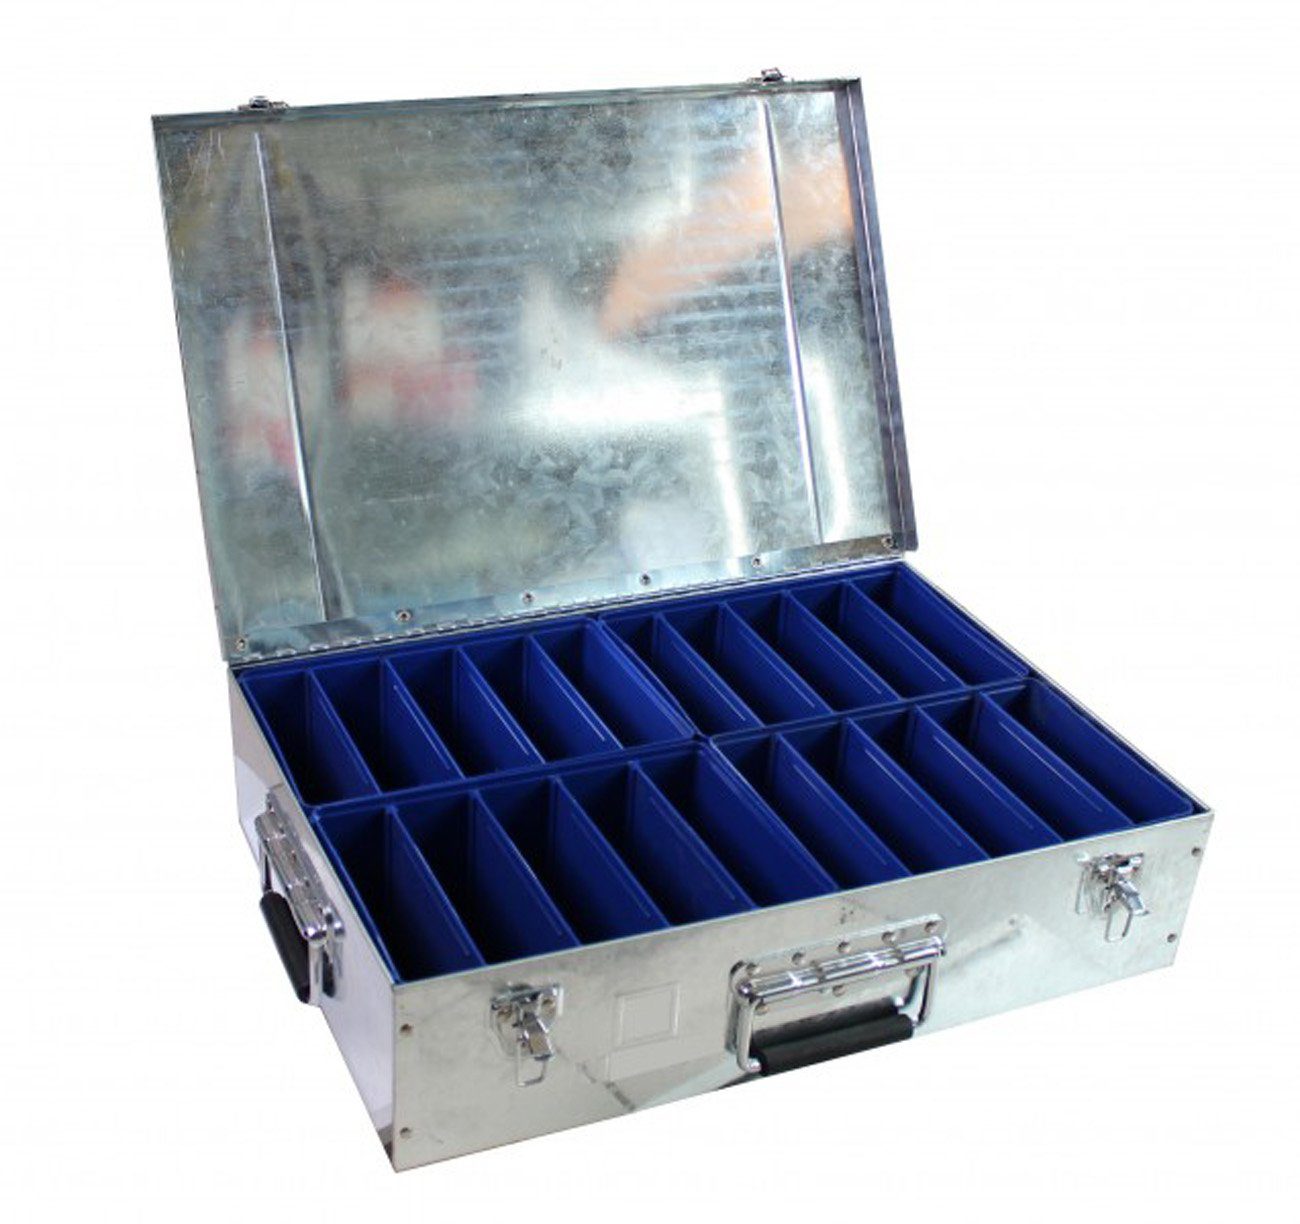 myMAW Werkzeugkoffer Fittingskoffer Koffer für Fittinge Stahlblechkoffer Metallkoffer…